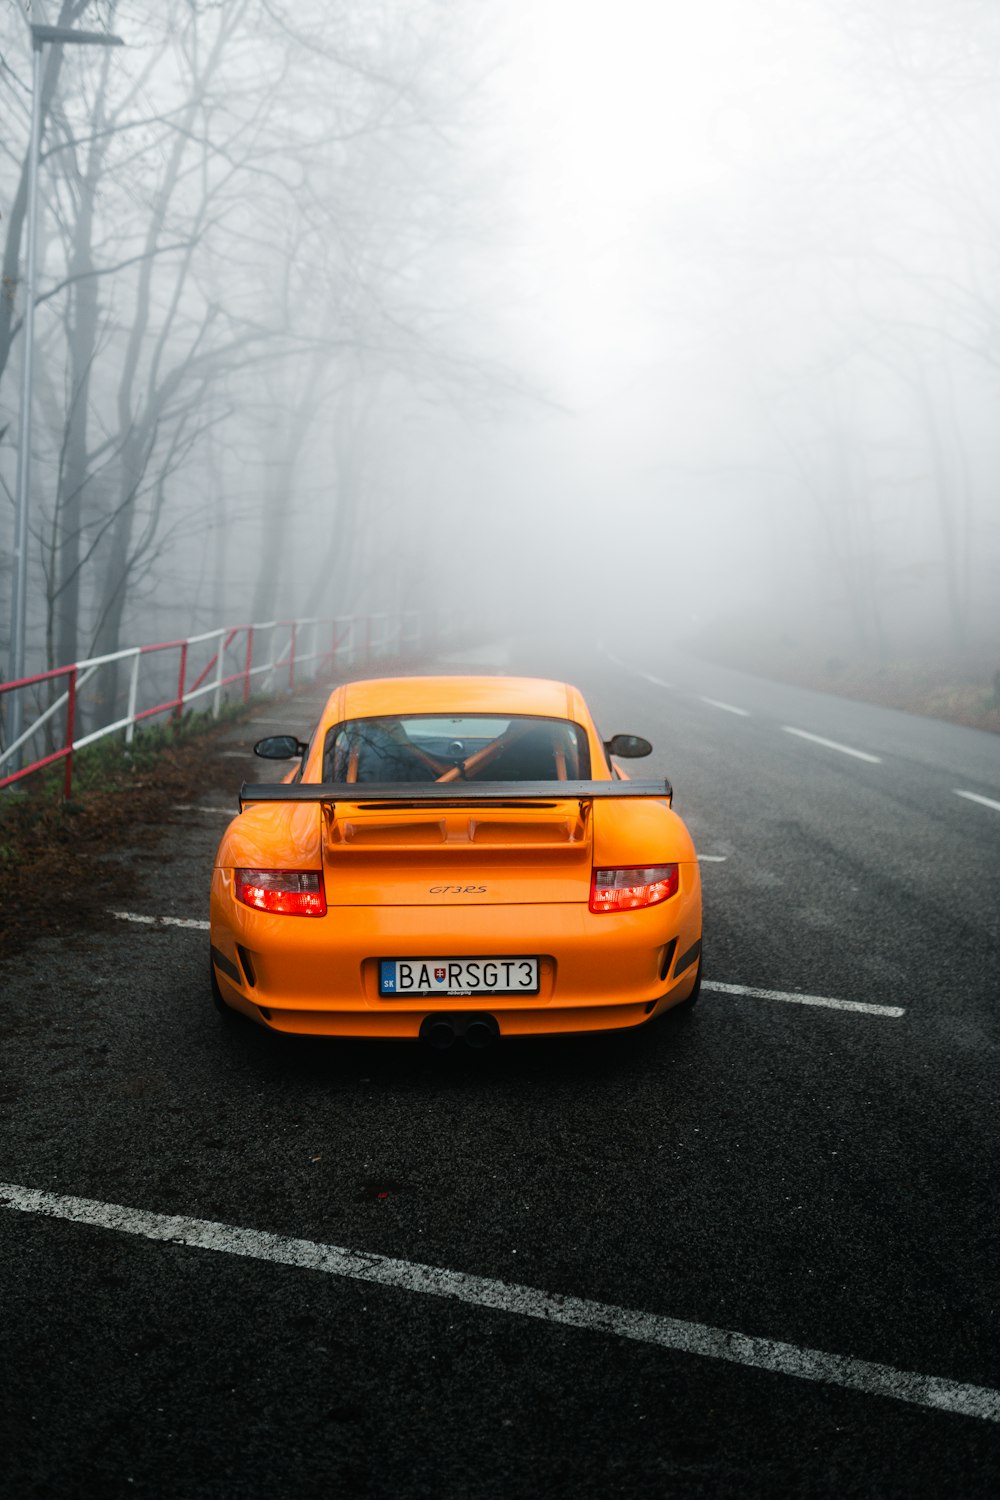 an orange sports car driving down a foggy road